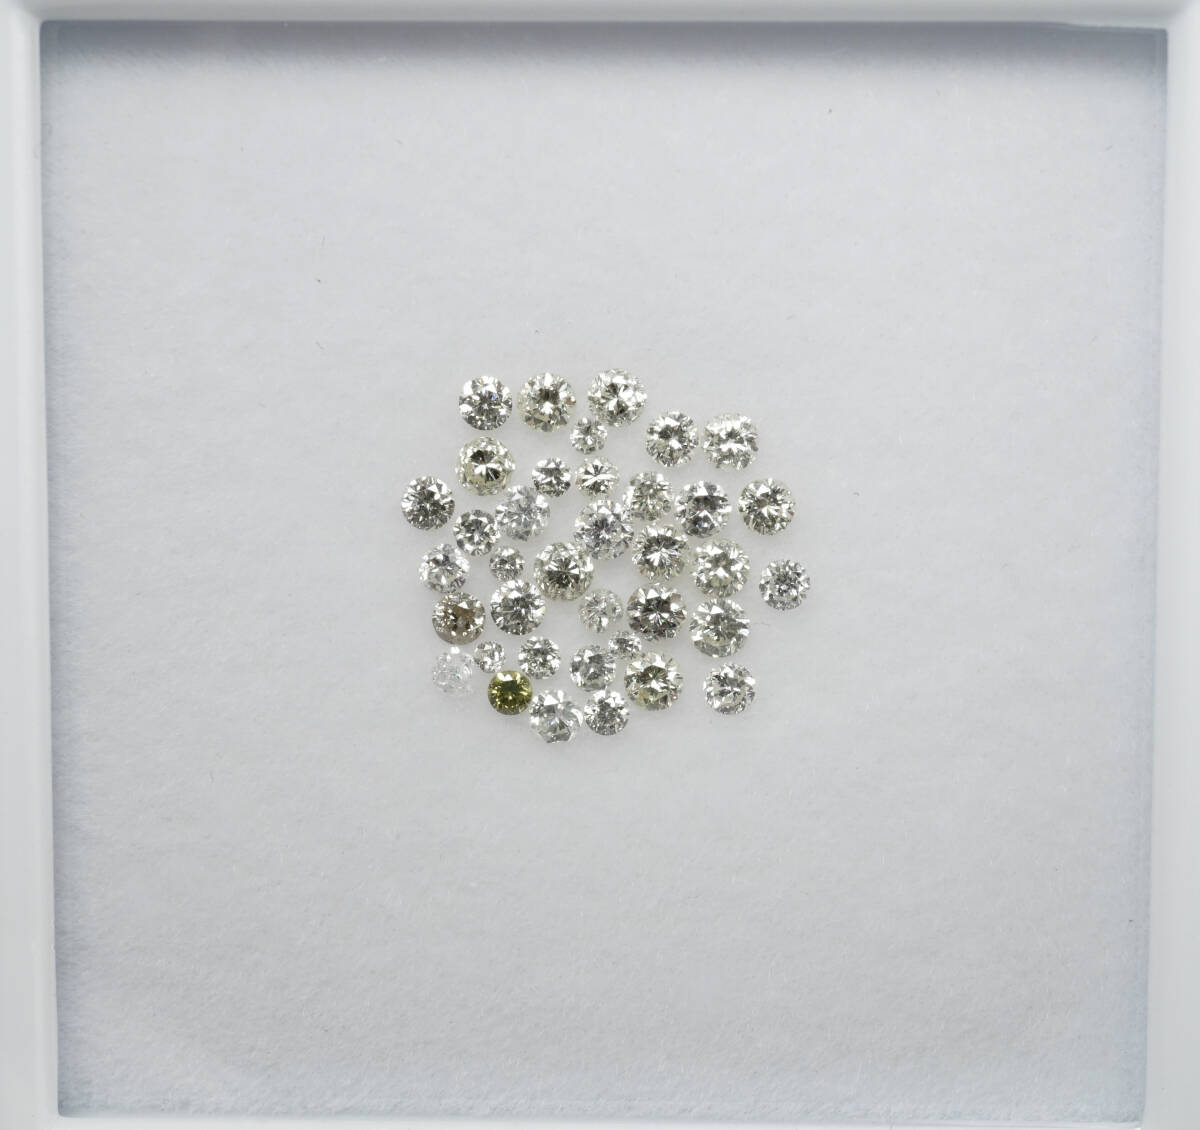 ★おまとめ天然ダイヤモンド 最高級 0.623ct 1.8mm下 ルース 宝石 ジュエリー jewelryの画像1